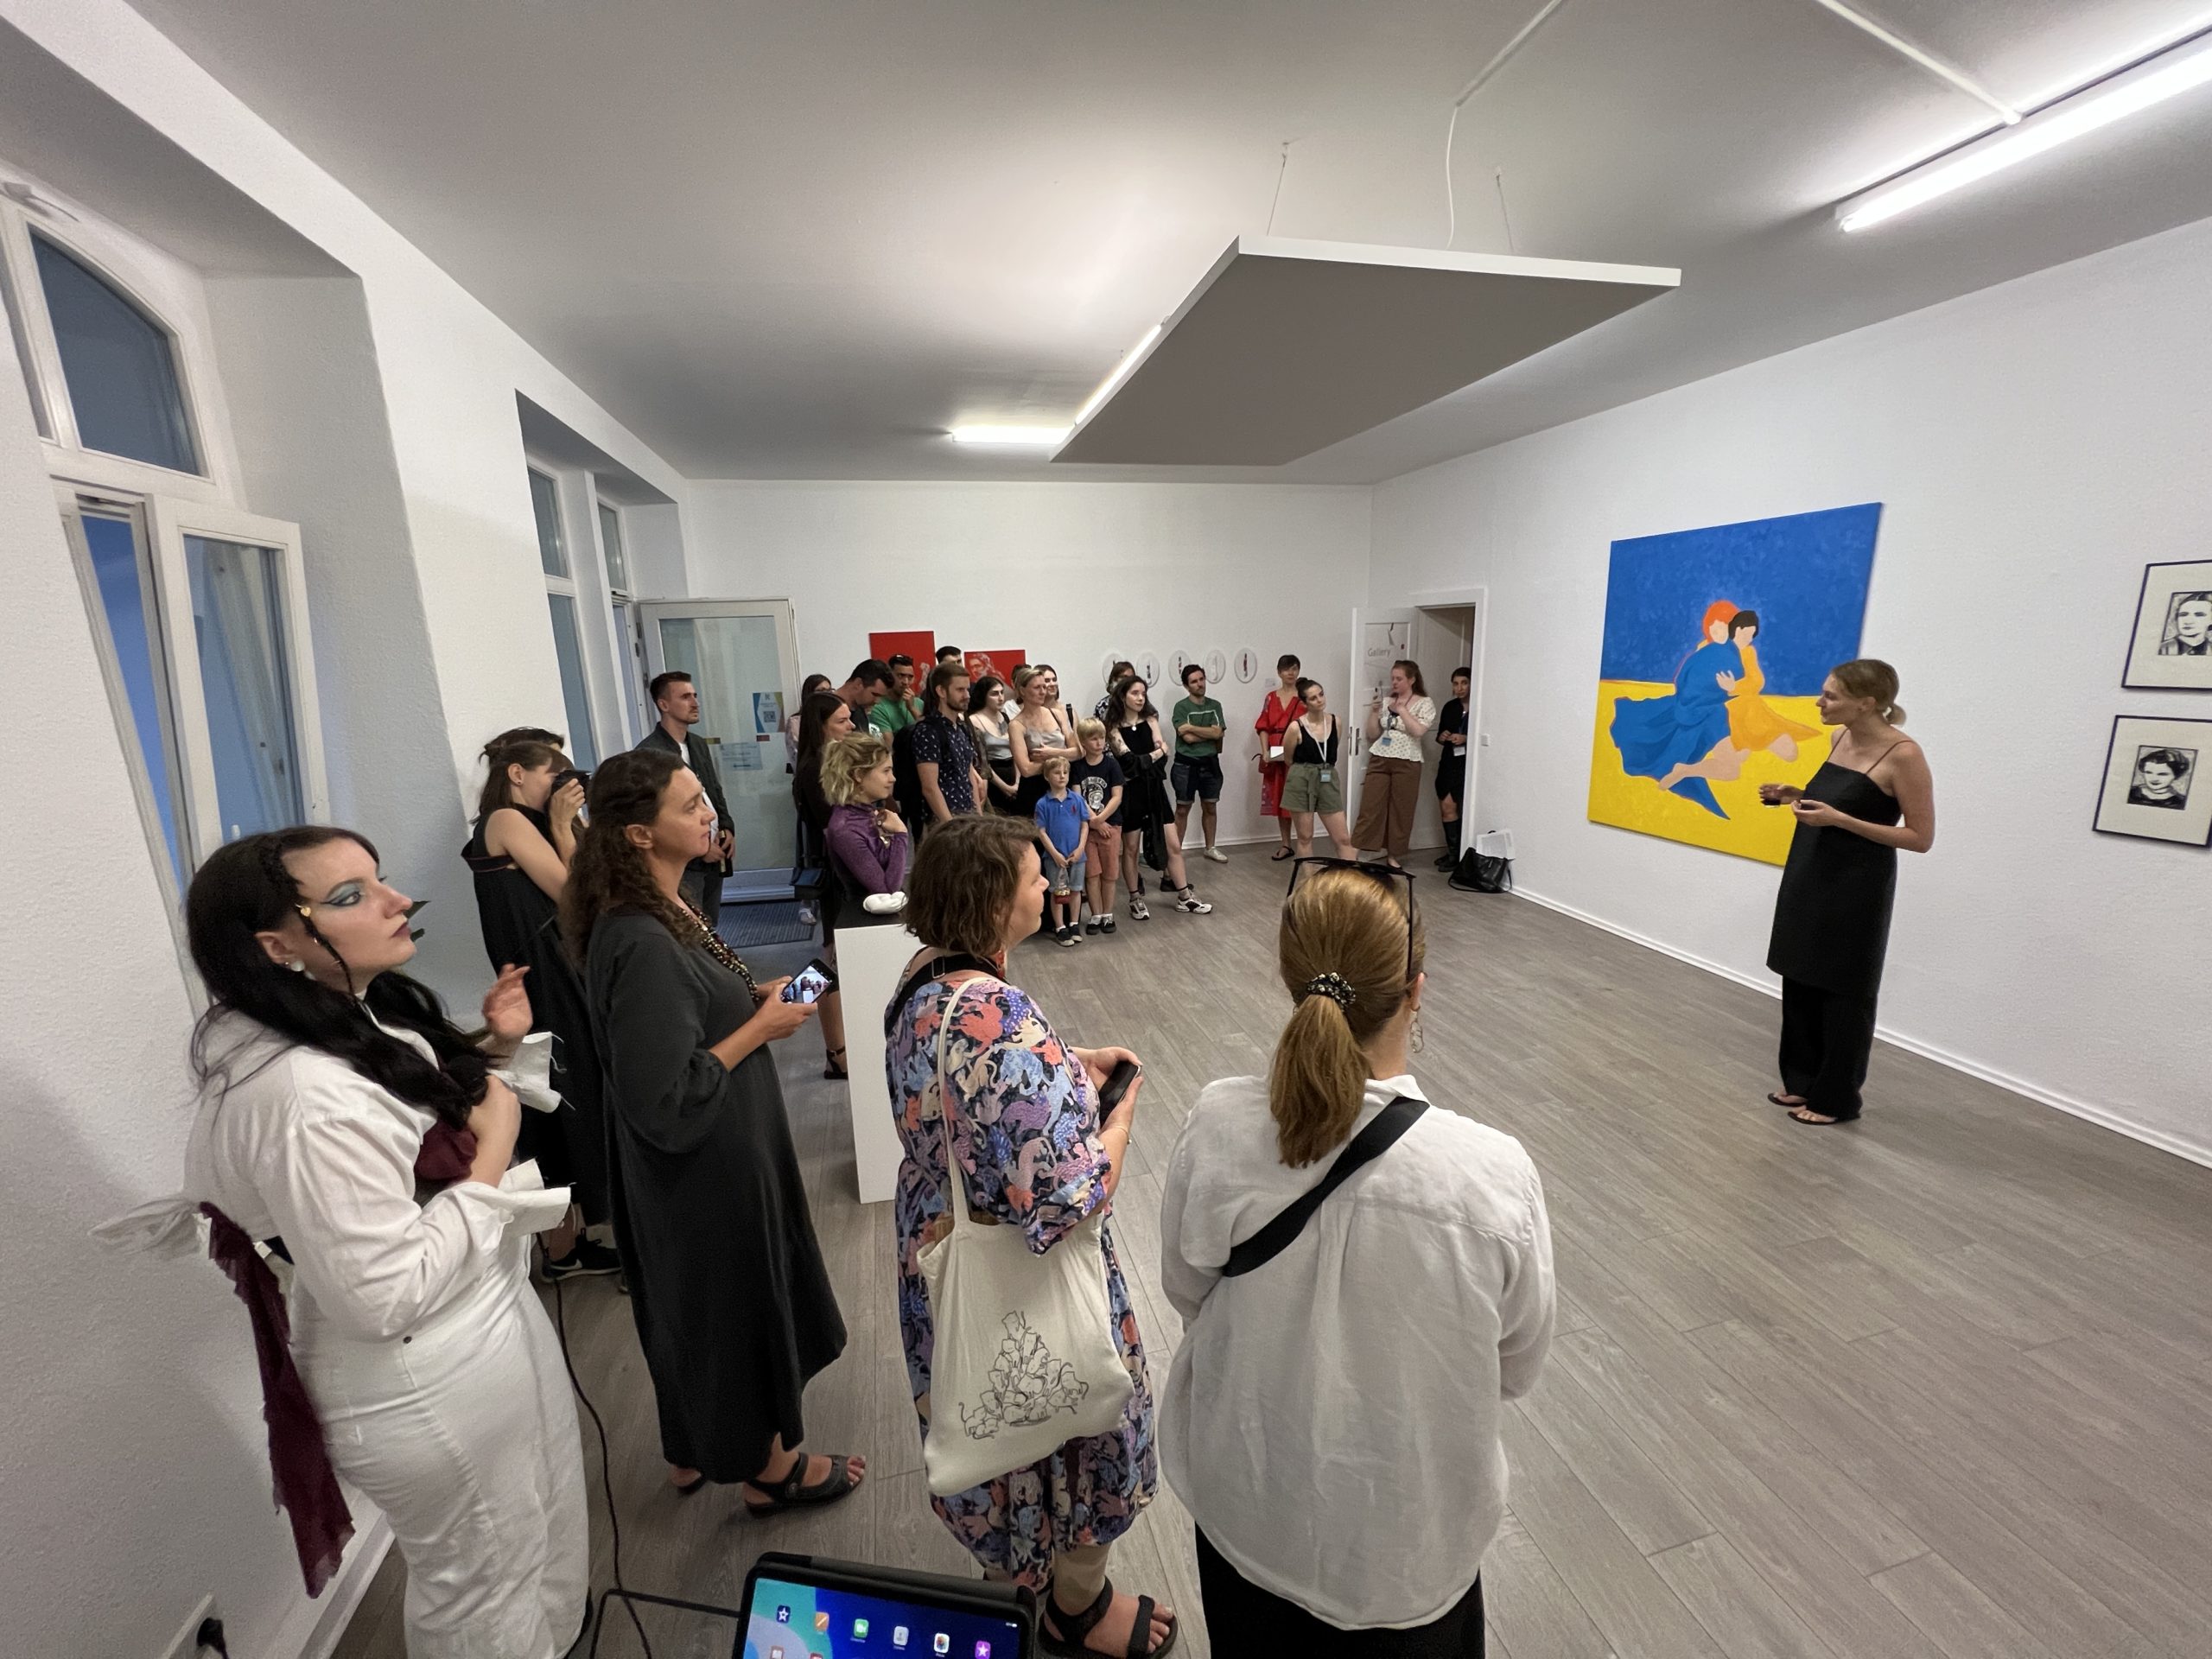 Olha Lobazova spricht zu Besucher:innen während der Ausstellungseröffnung "Light Conquers Darkness" in der Green Hill Gallery.  Foto: Greenhill Gallery